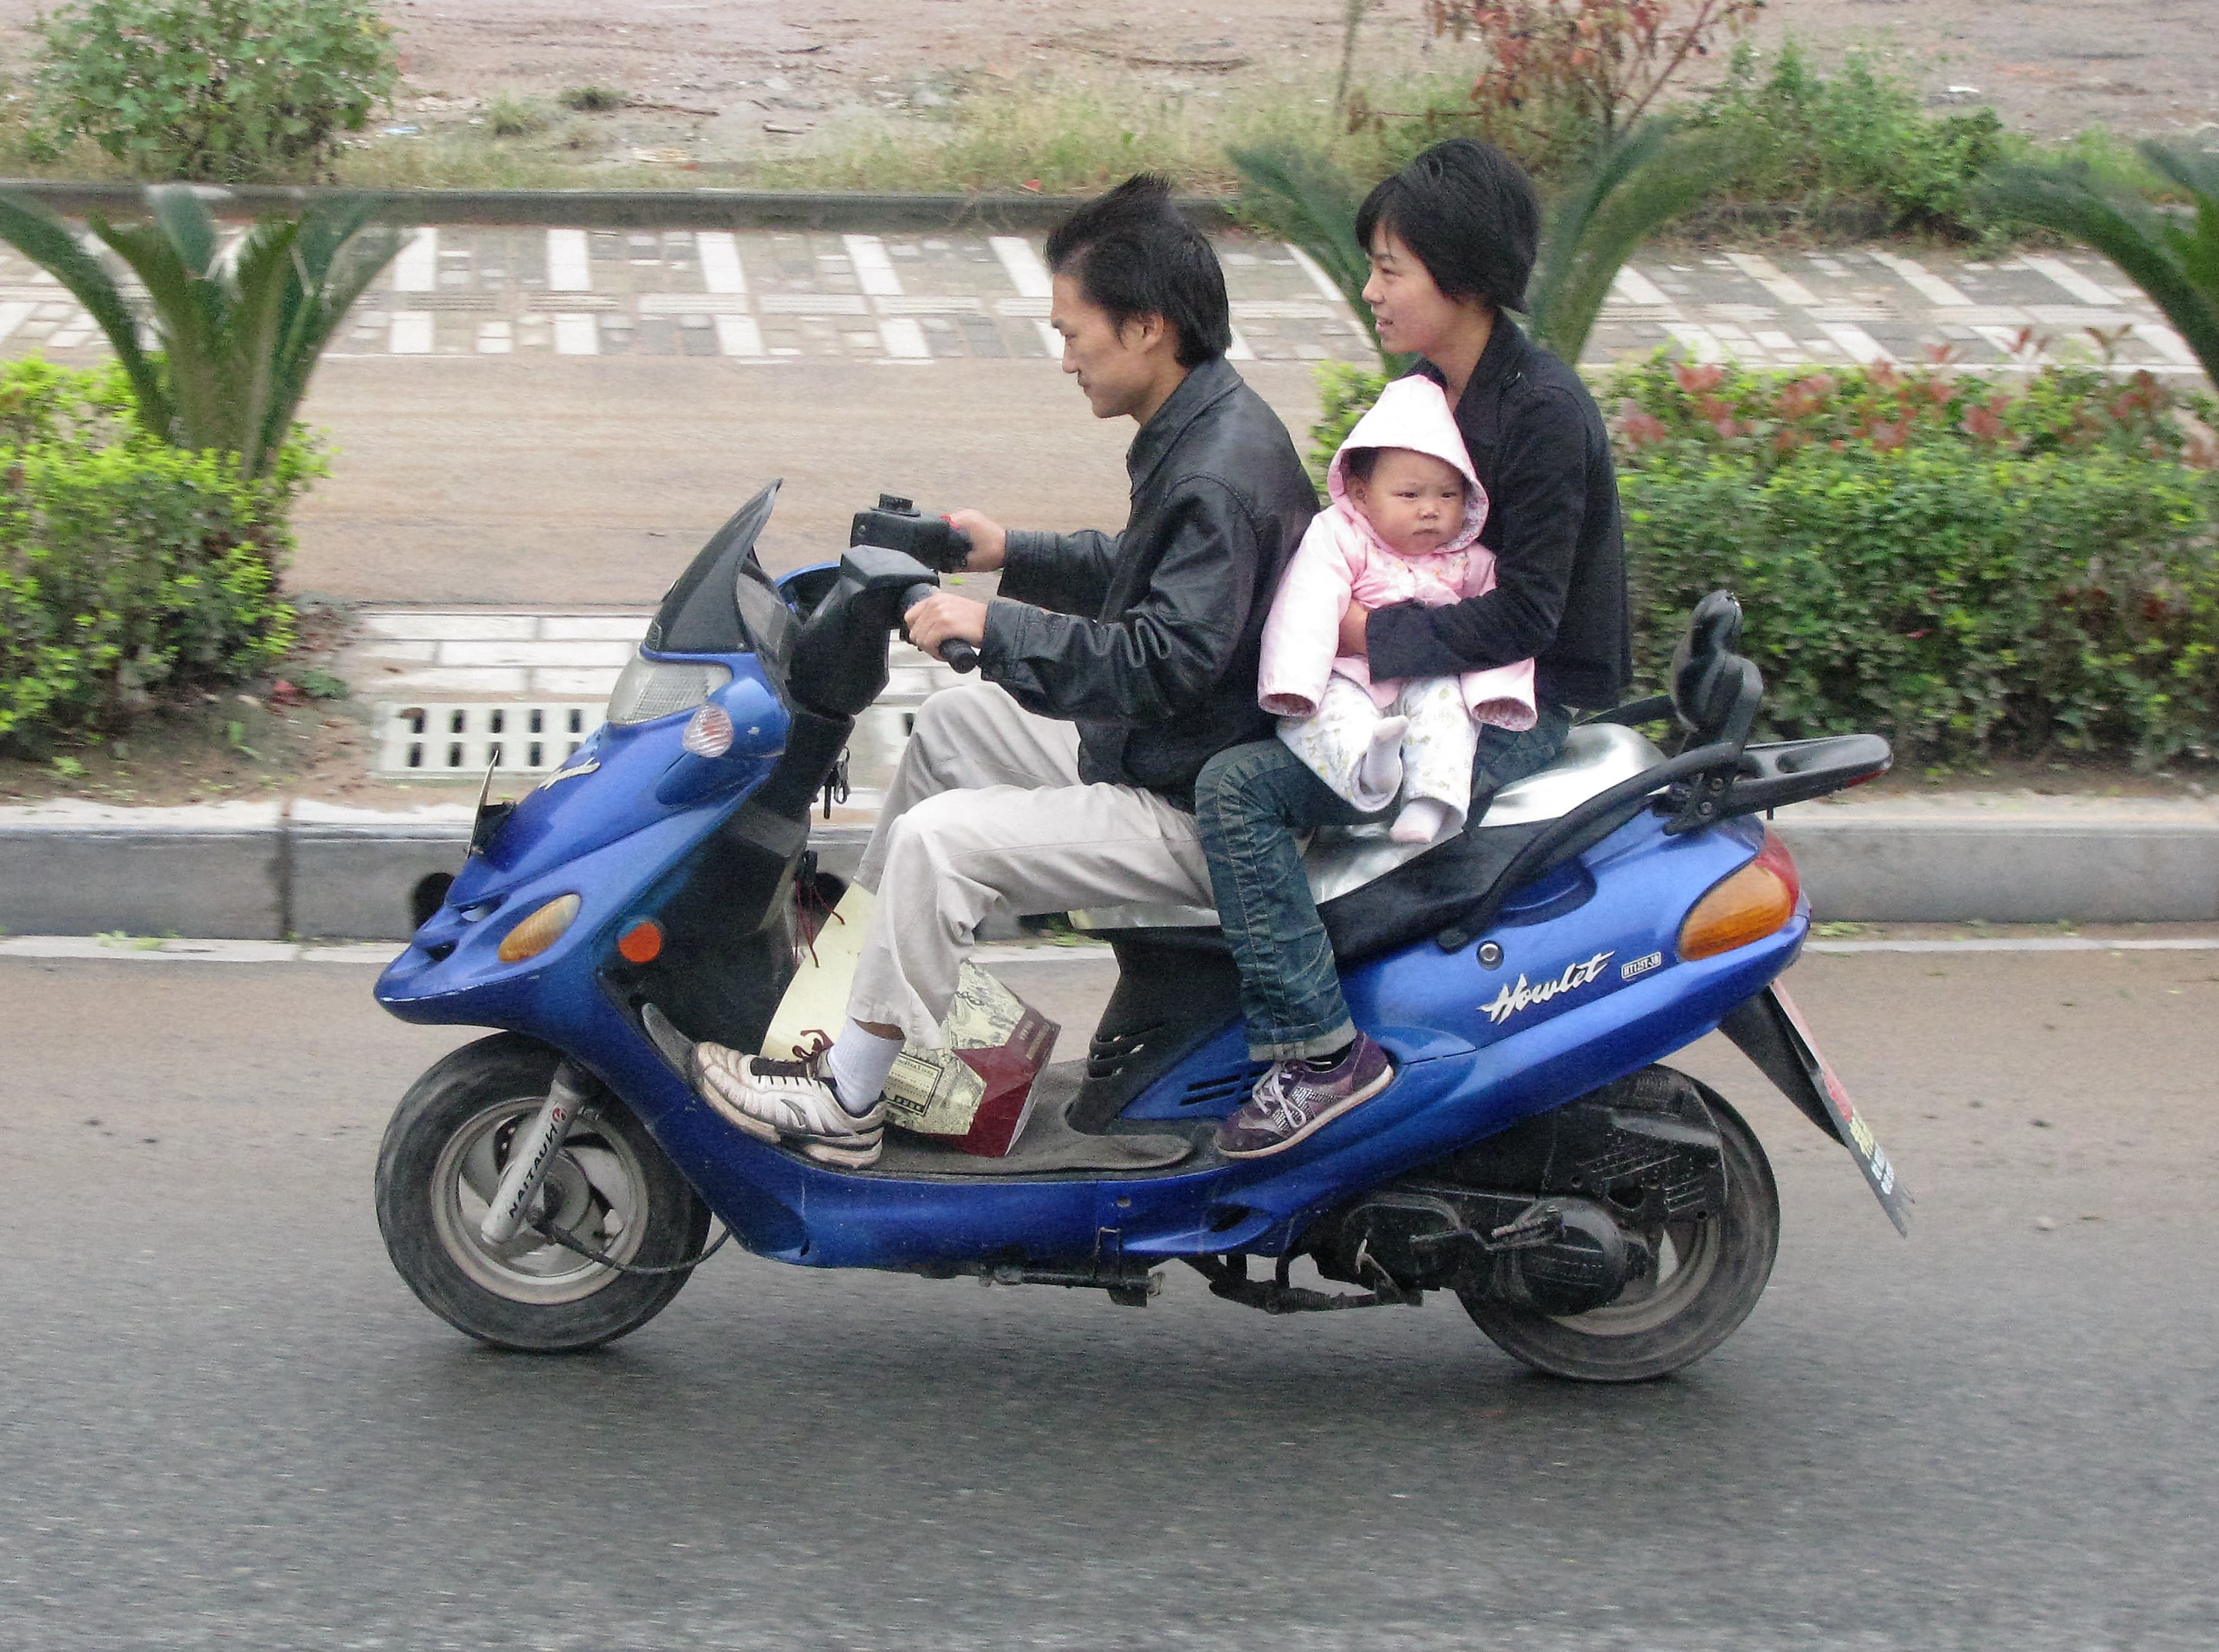 jeg er syg Highland Uafhængig File:Scooter family riding, Hubei, China.jpg - Wikimedia Commons